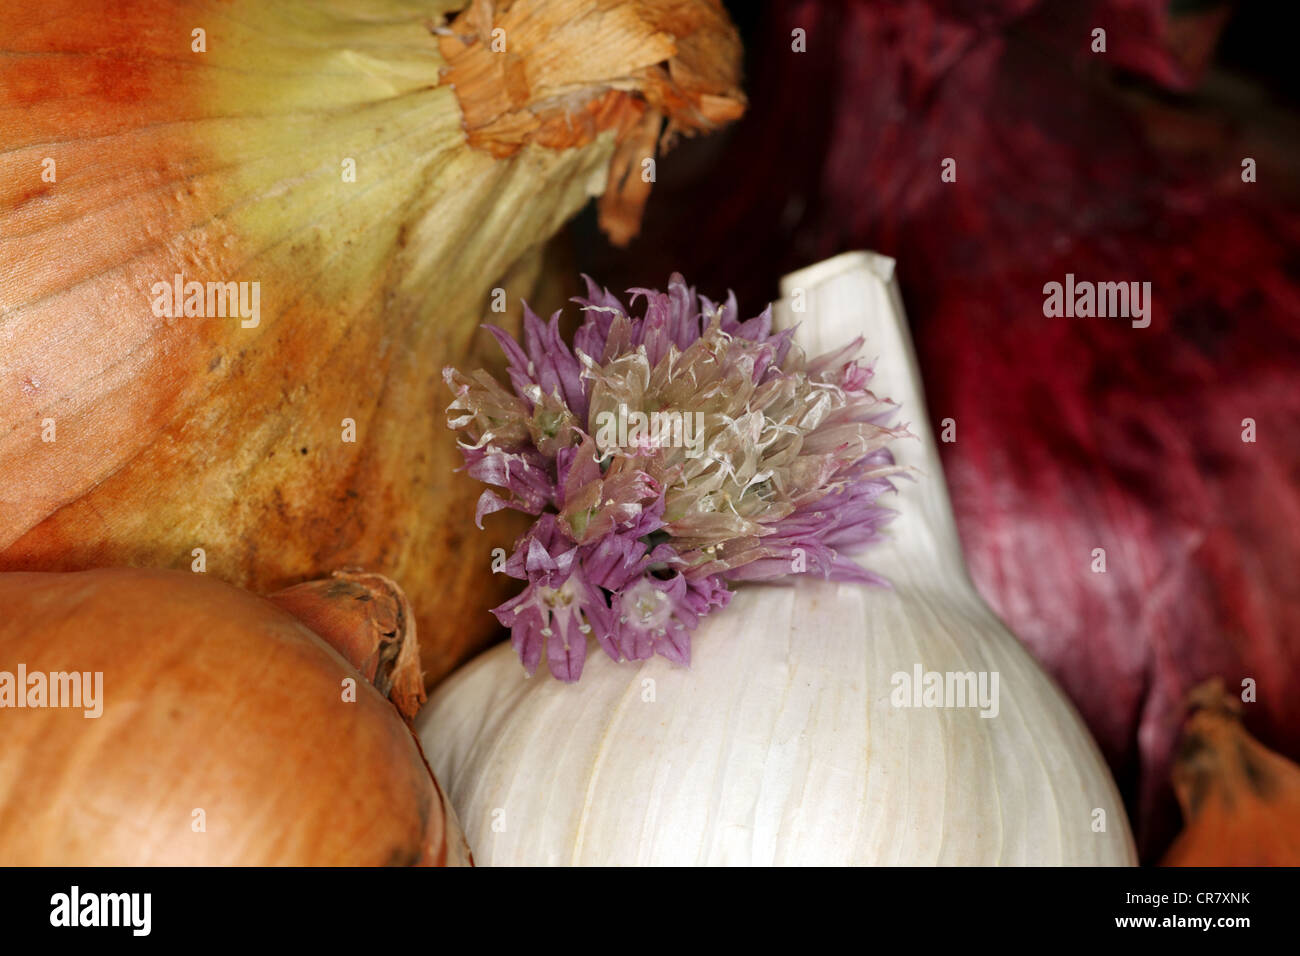 Allium assortment Stock Photo